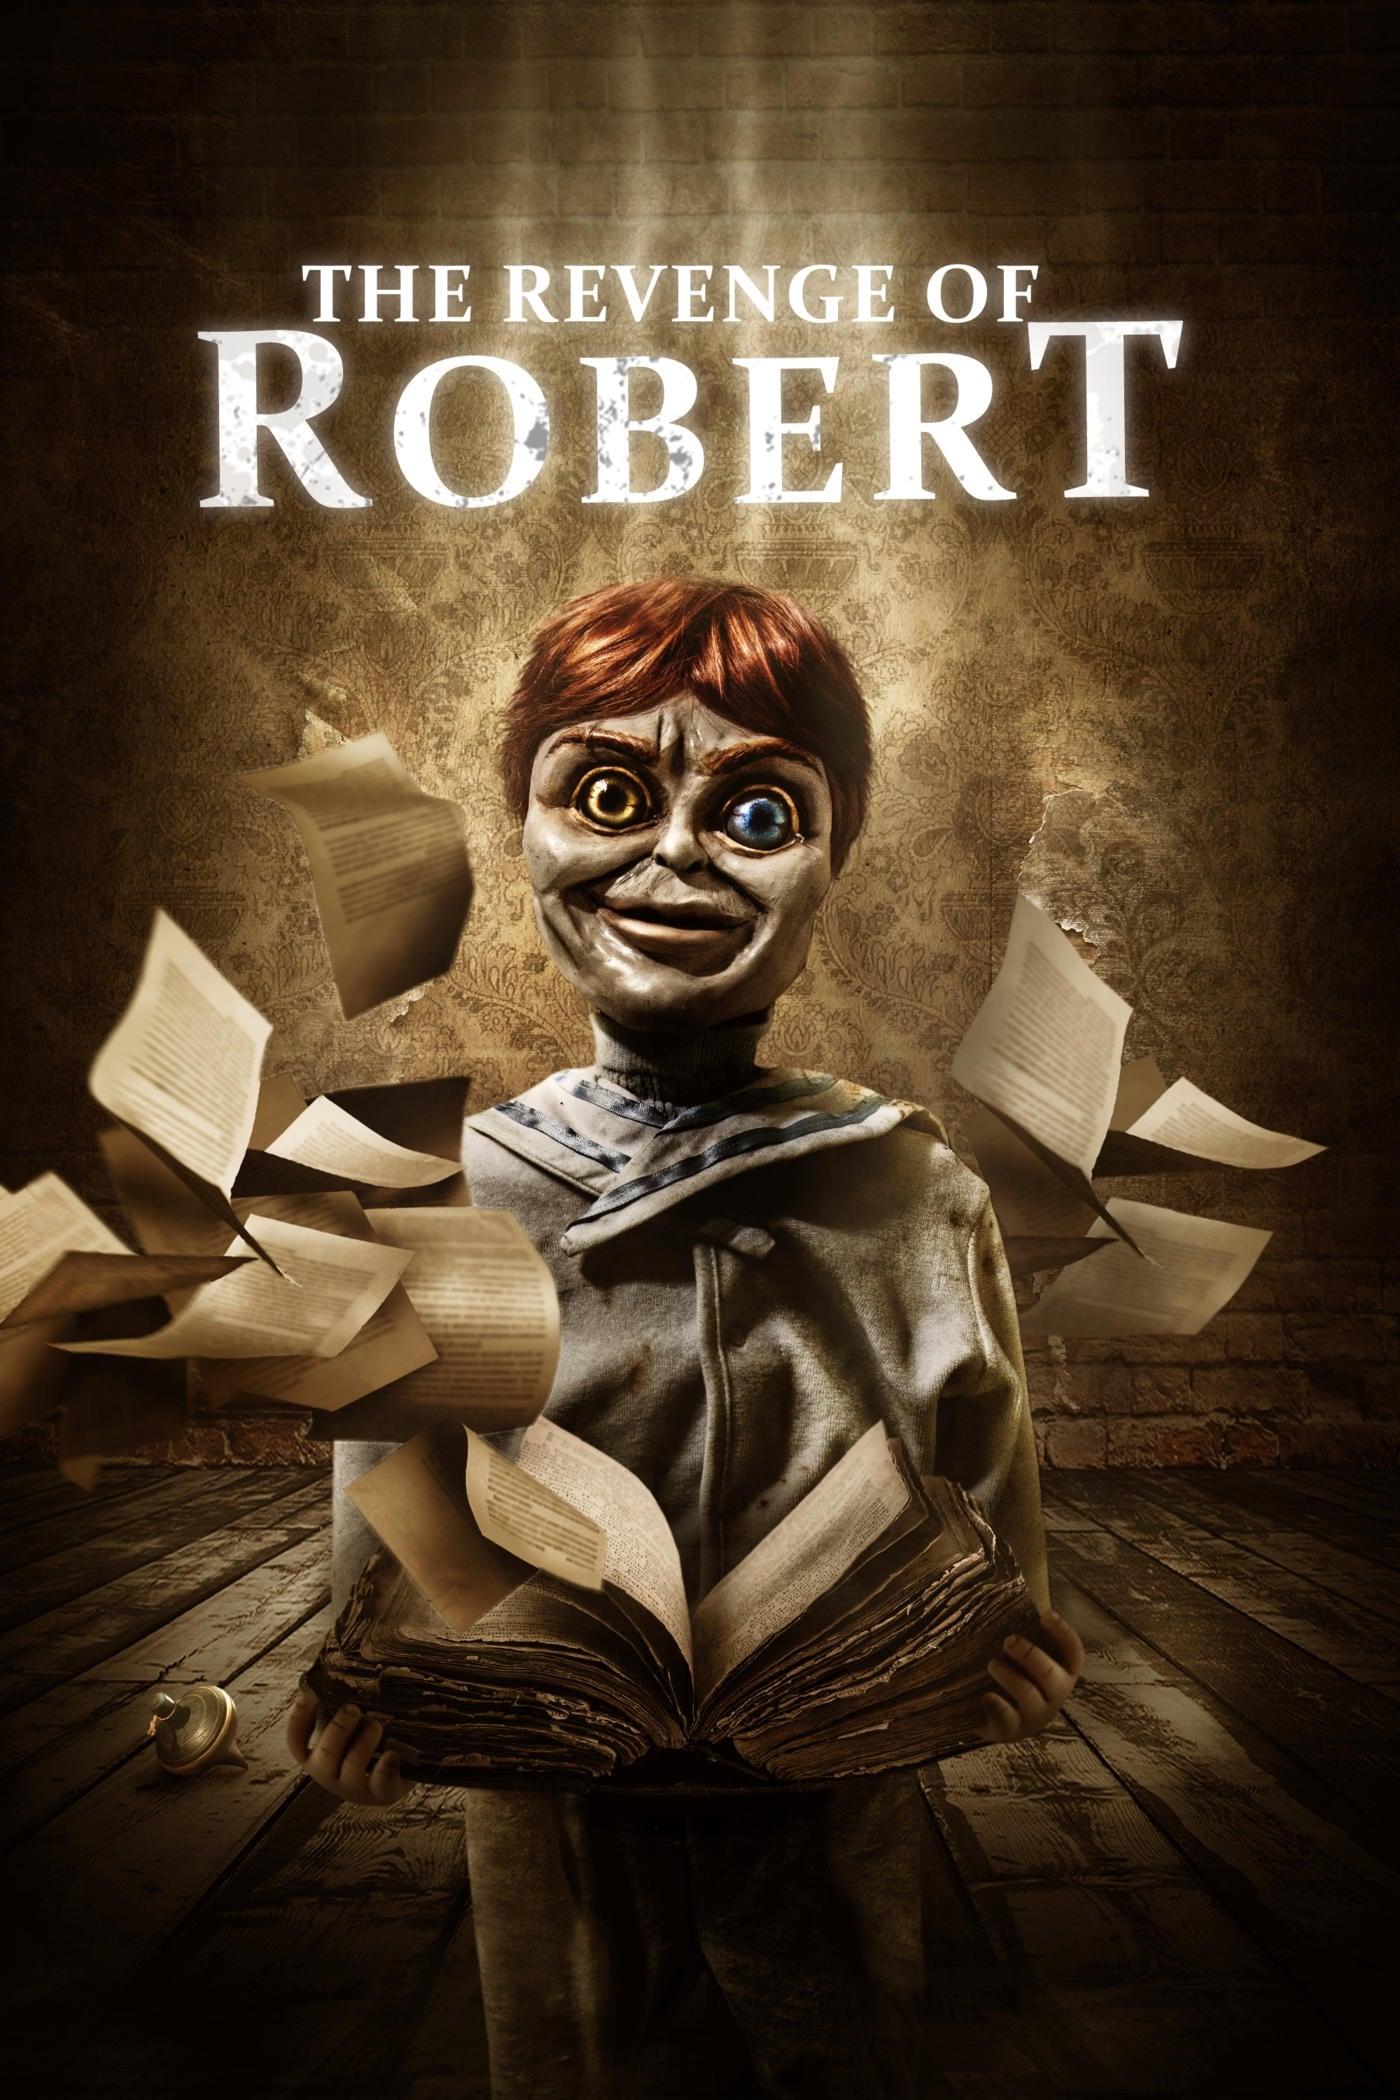 The Revenge of Robert poster